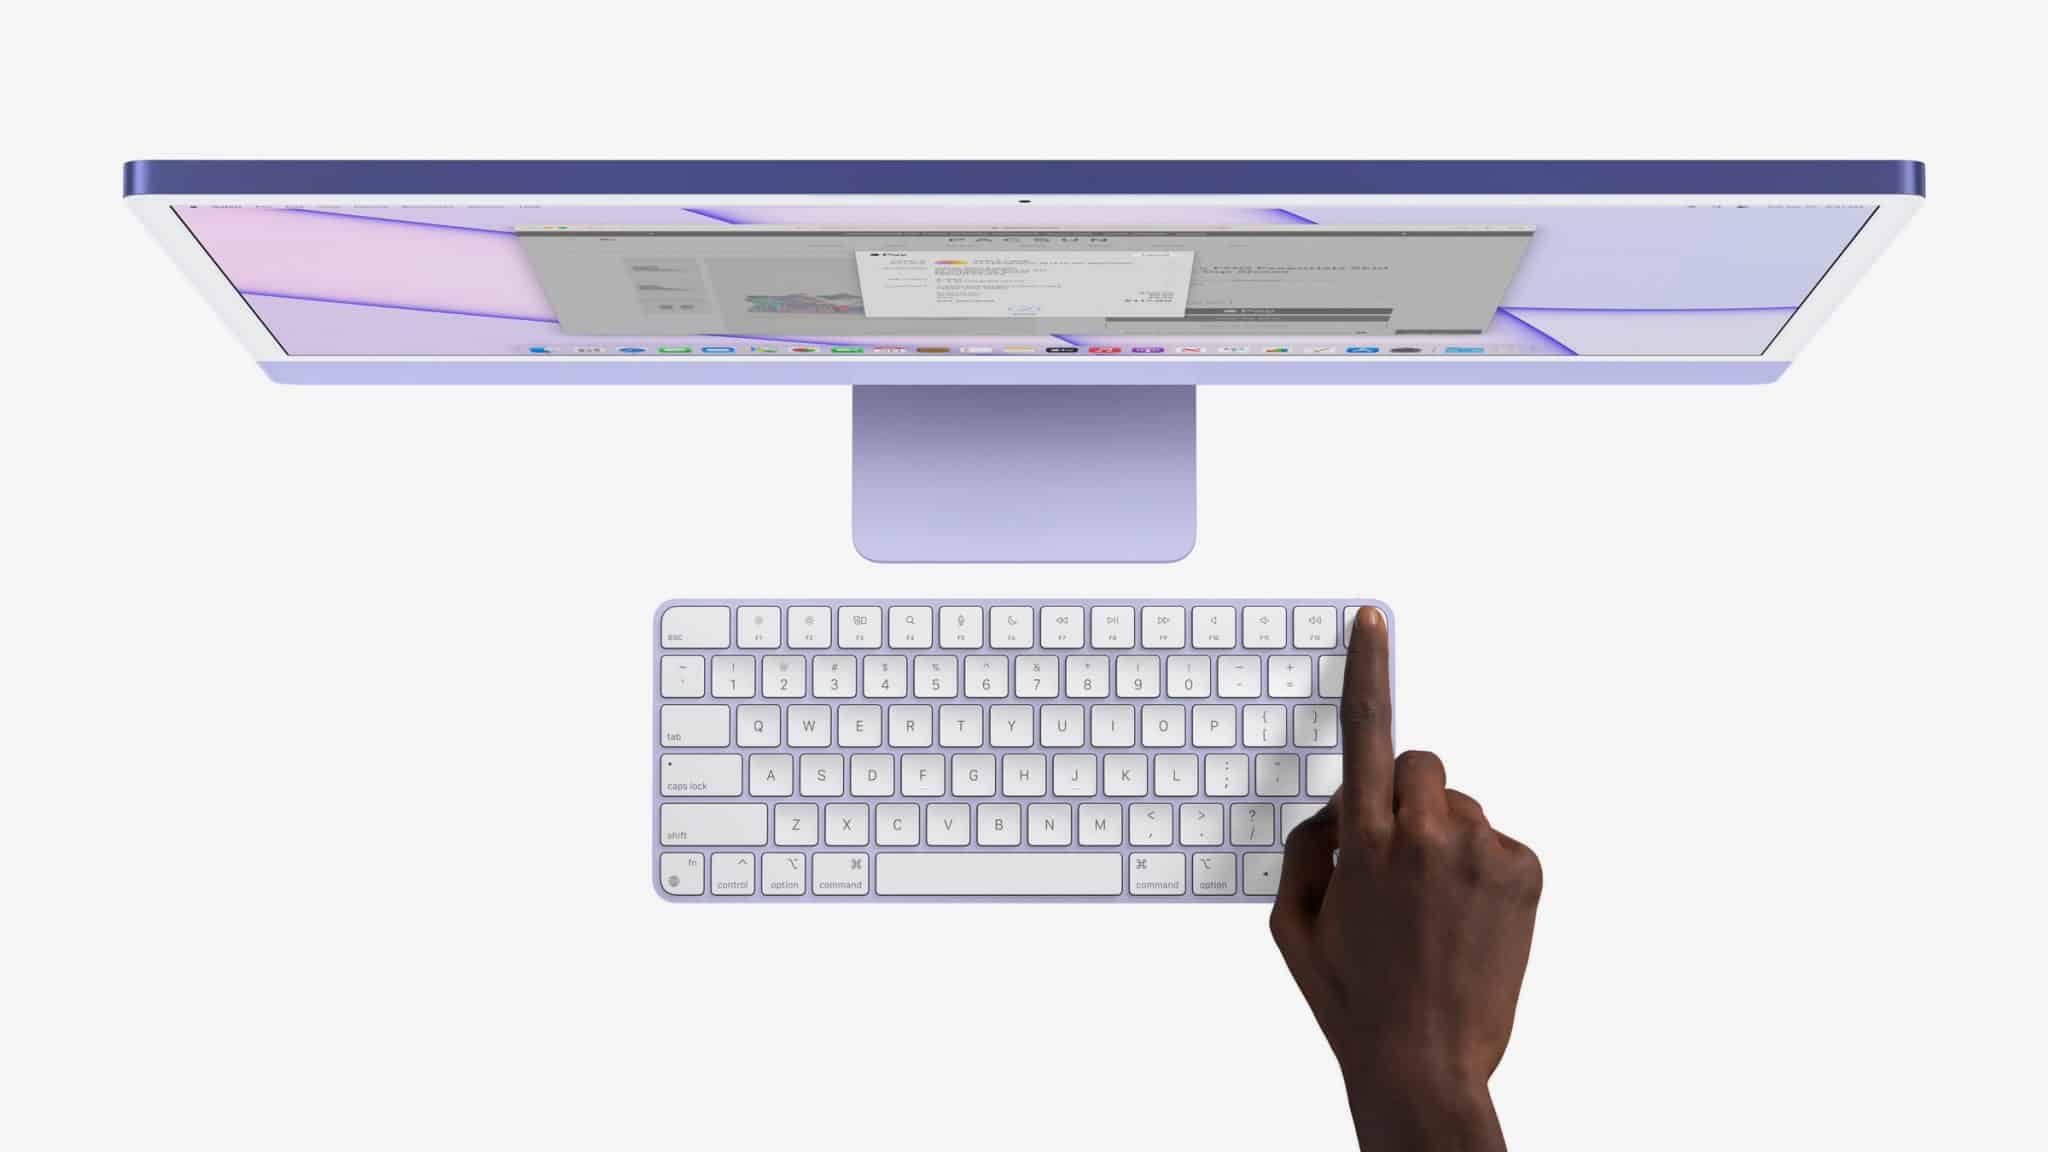 iMac 2021 ra mắt với 7 tuỳ chọn màu mới, chạy vi xử lý M1 và thiết kế giống Pro Display XDR